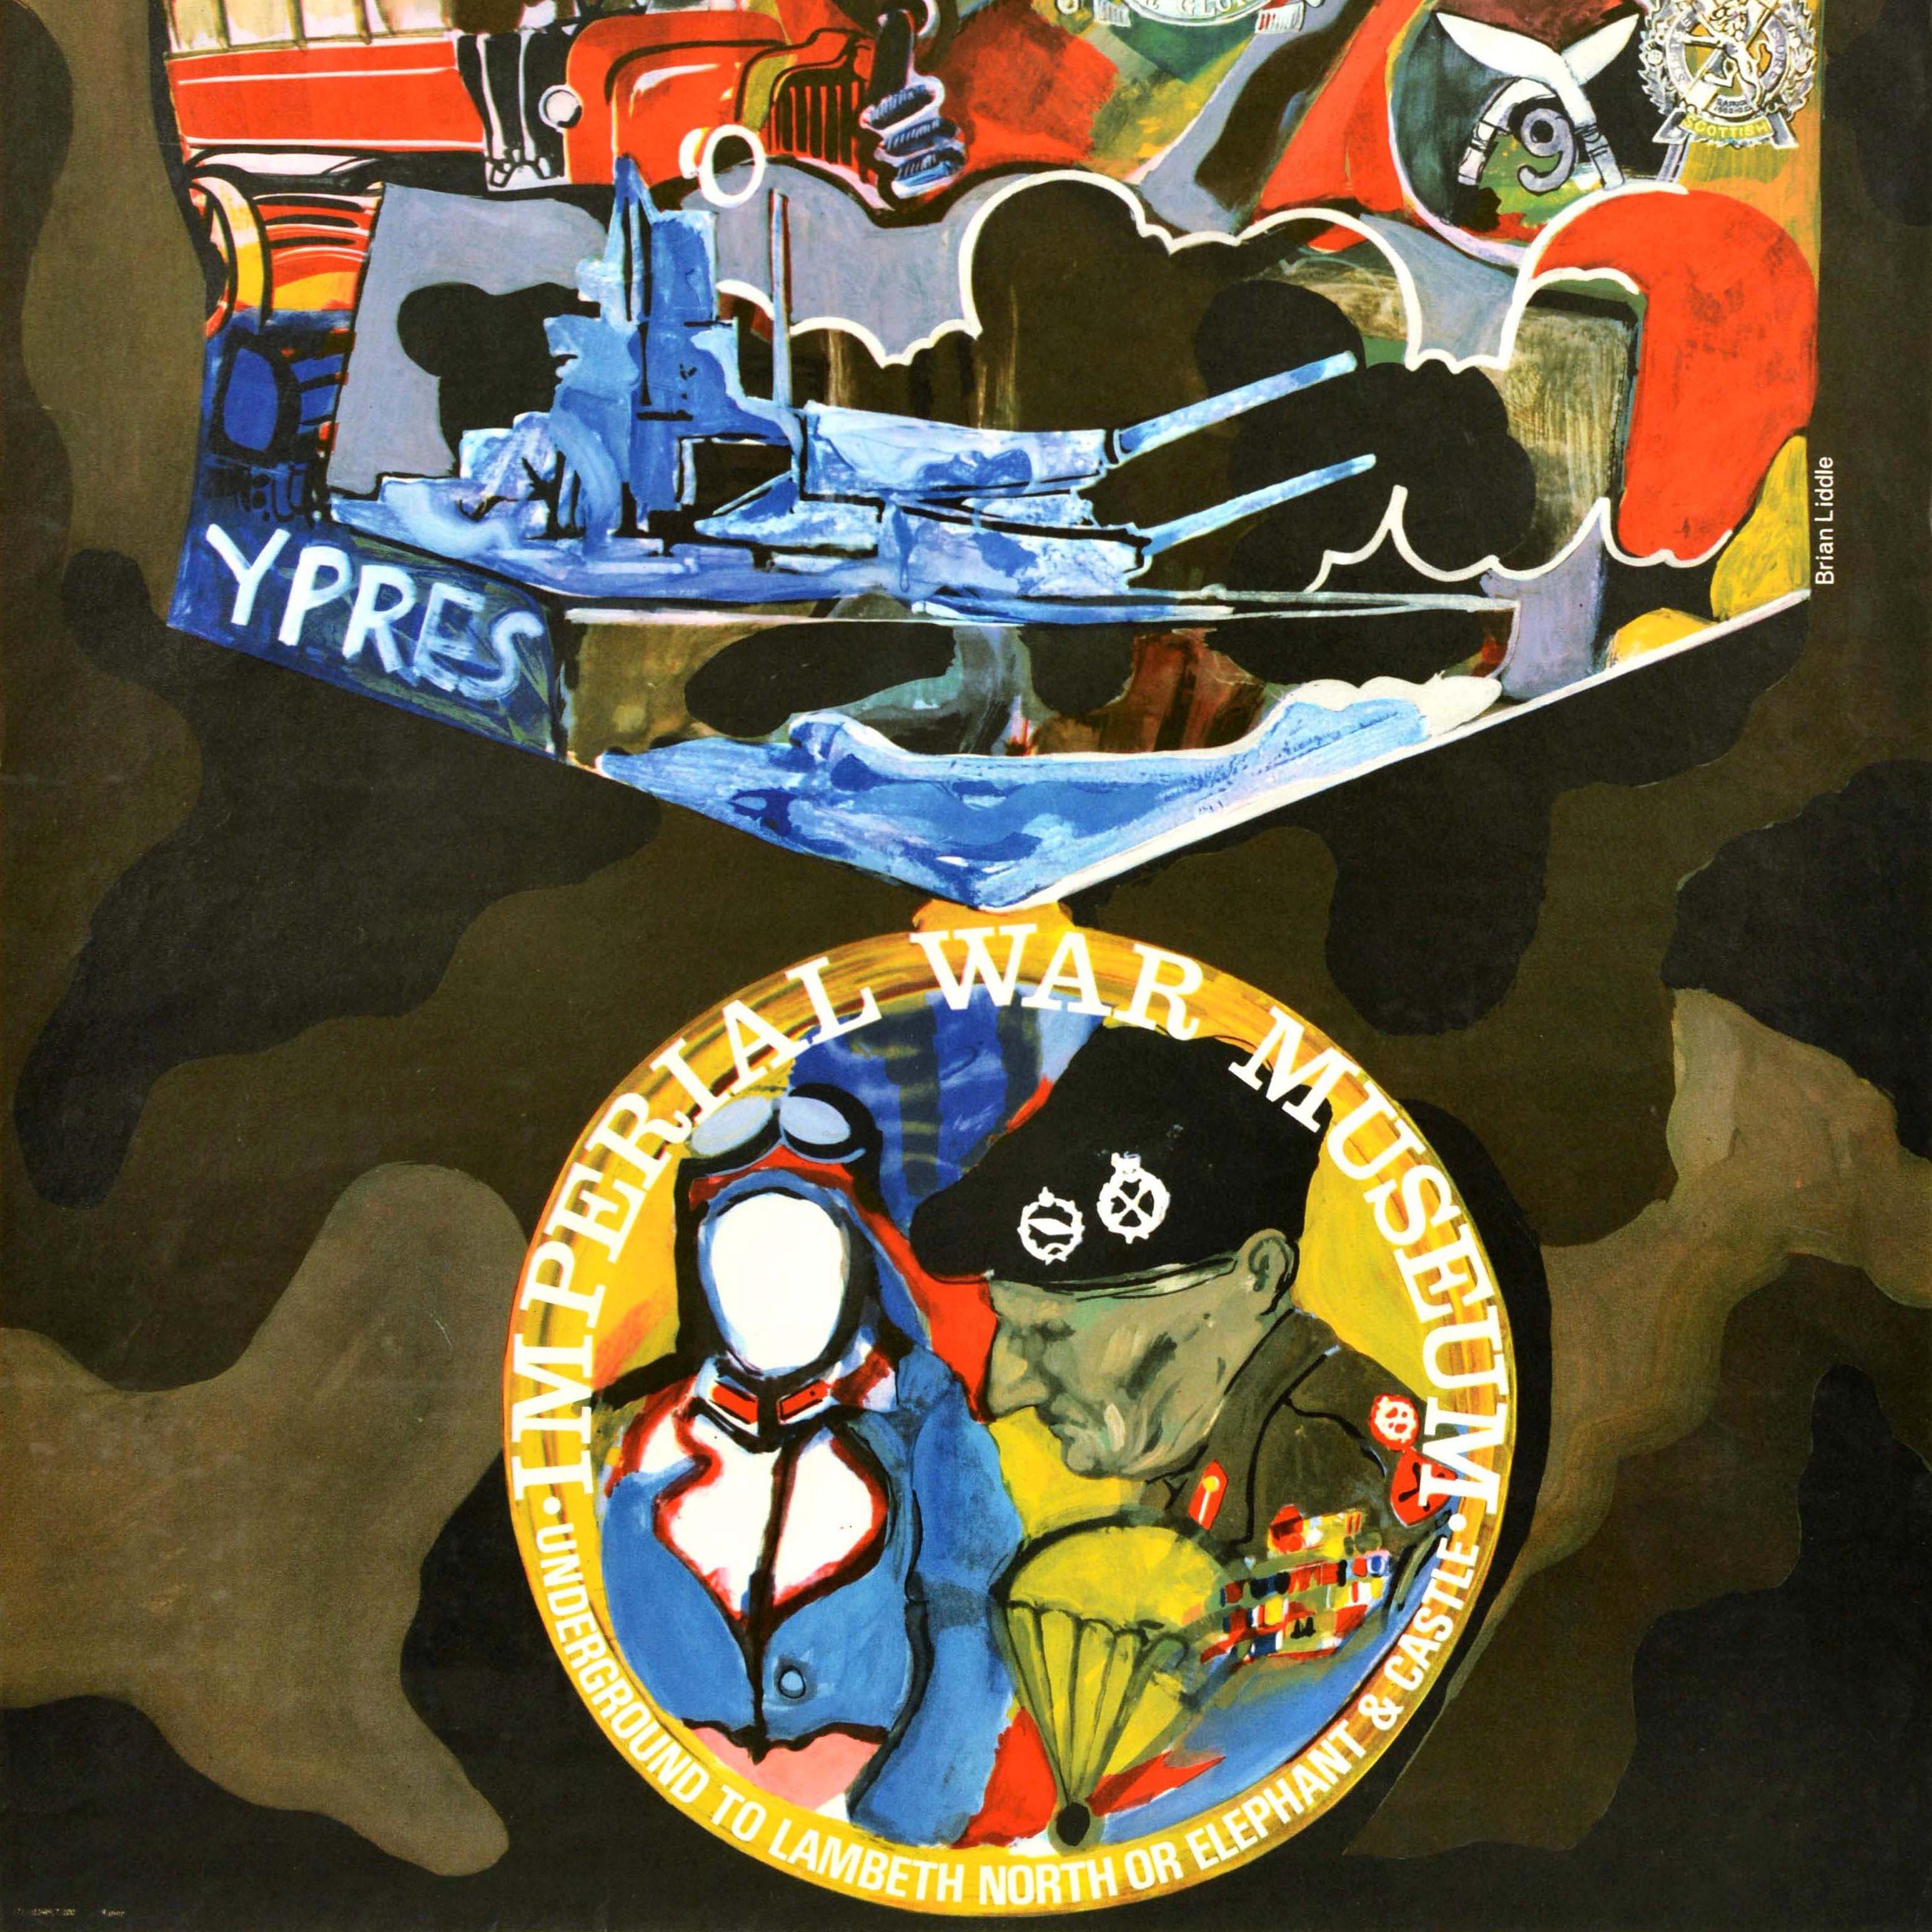 Affiche de reproduction officielle d'époque émise pour le métro de Londres comportant des illustrations colorées de la Première Guerre mondiale représentant la bataille d'Ypres avec des images d'un avion de la Royal Air Force, d'un bus rouge de